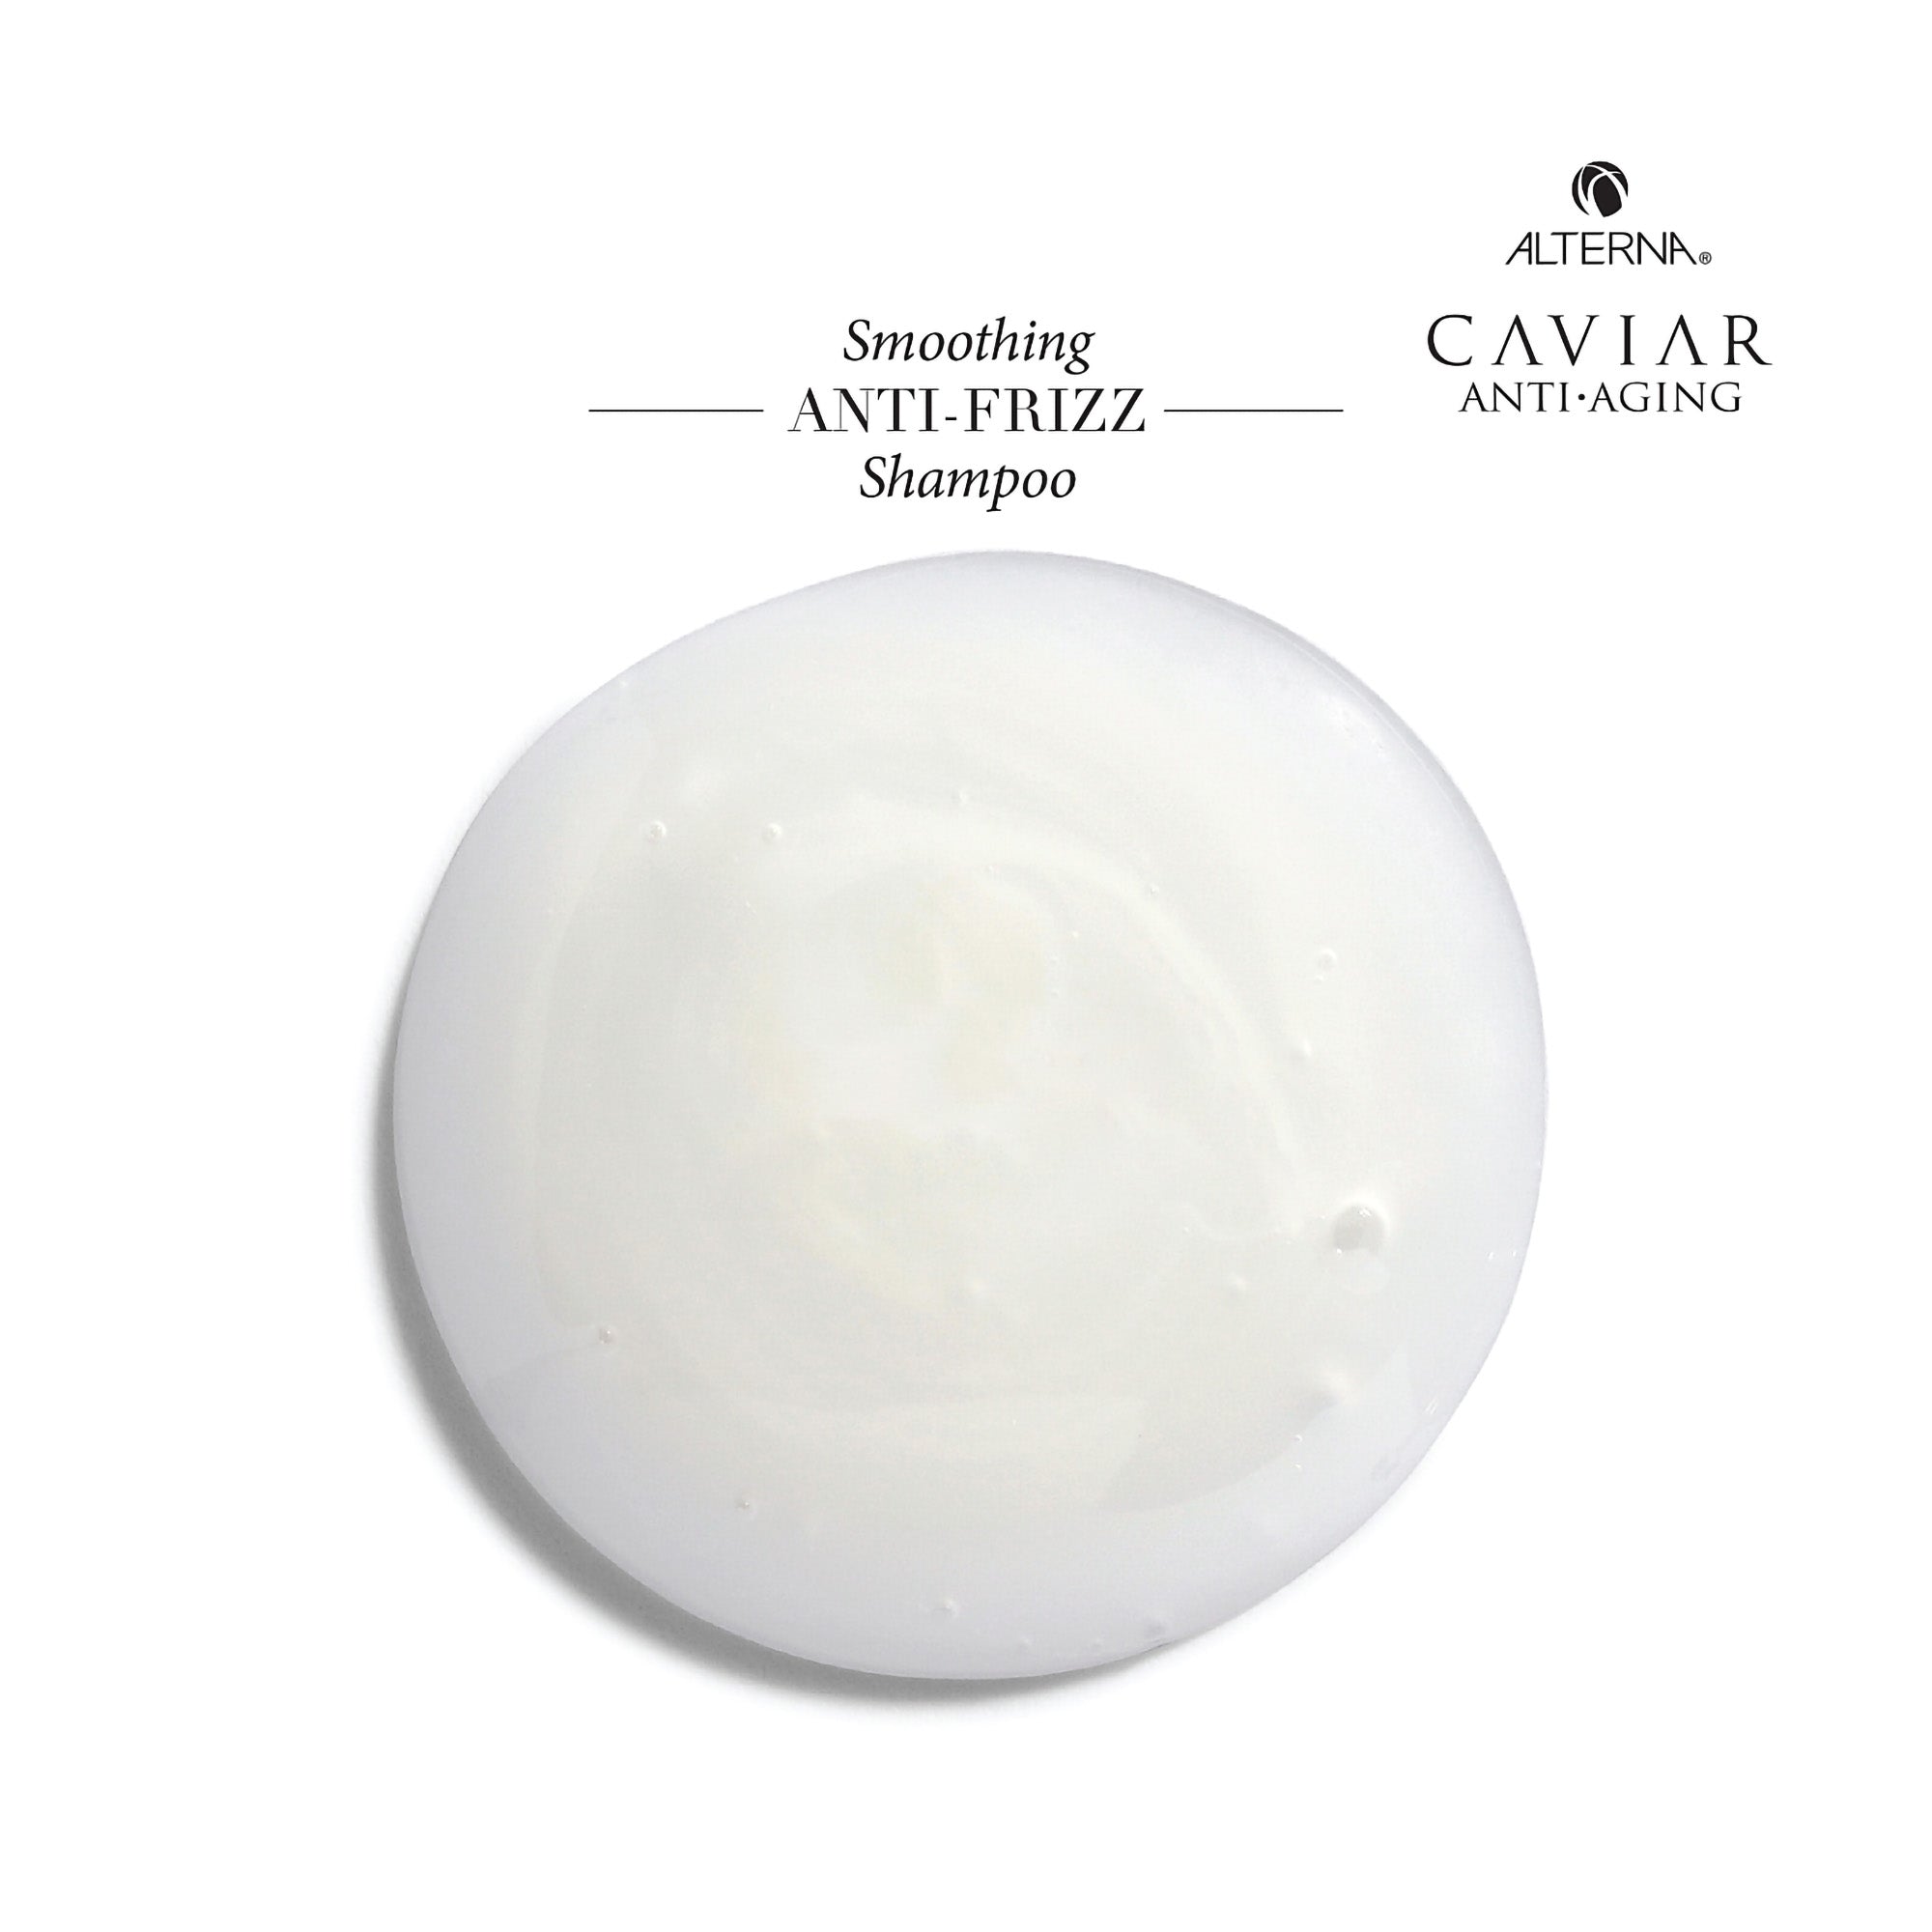 Alterna Caviar Anti-Aging Smoothing Anti-Frizz Shampoo - 33oz / 33.8